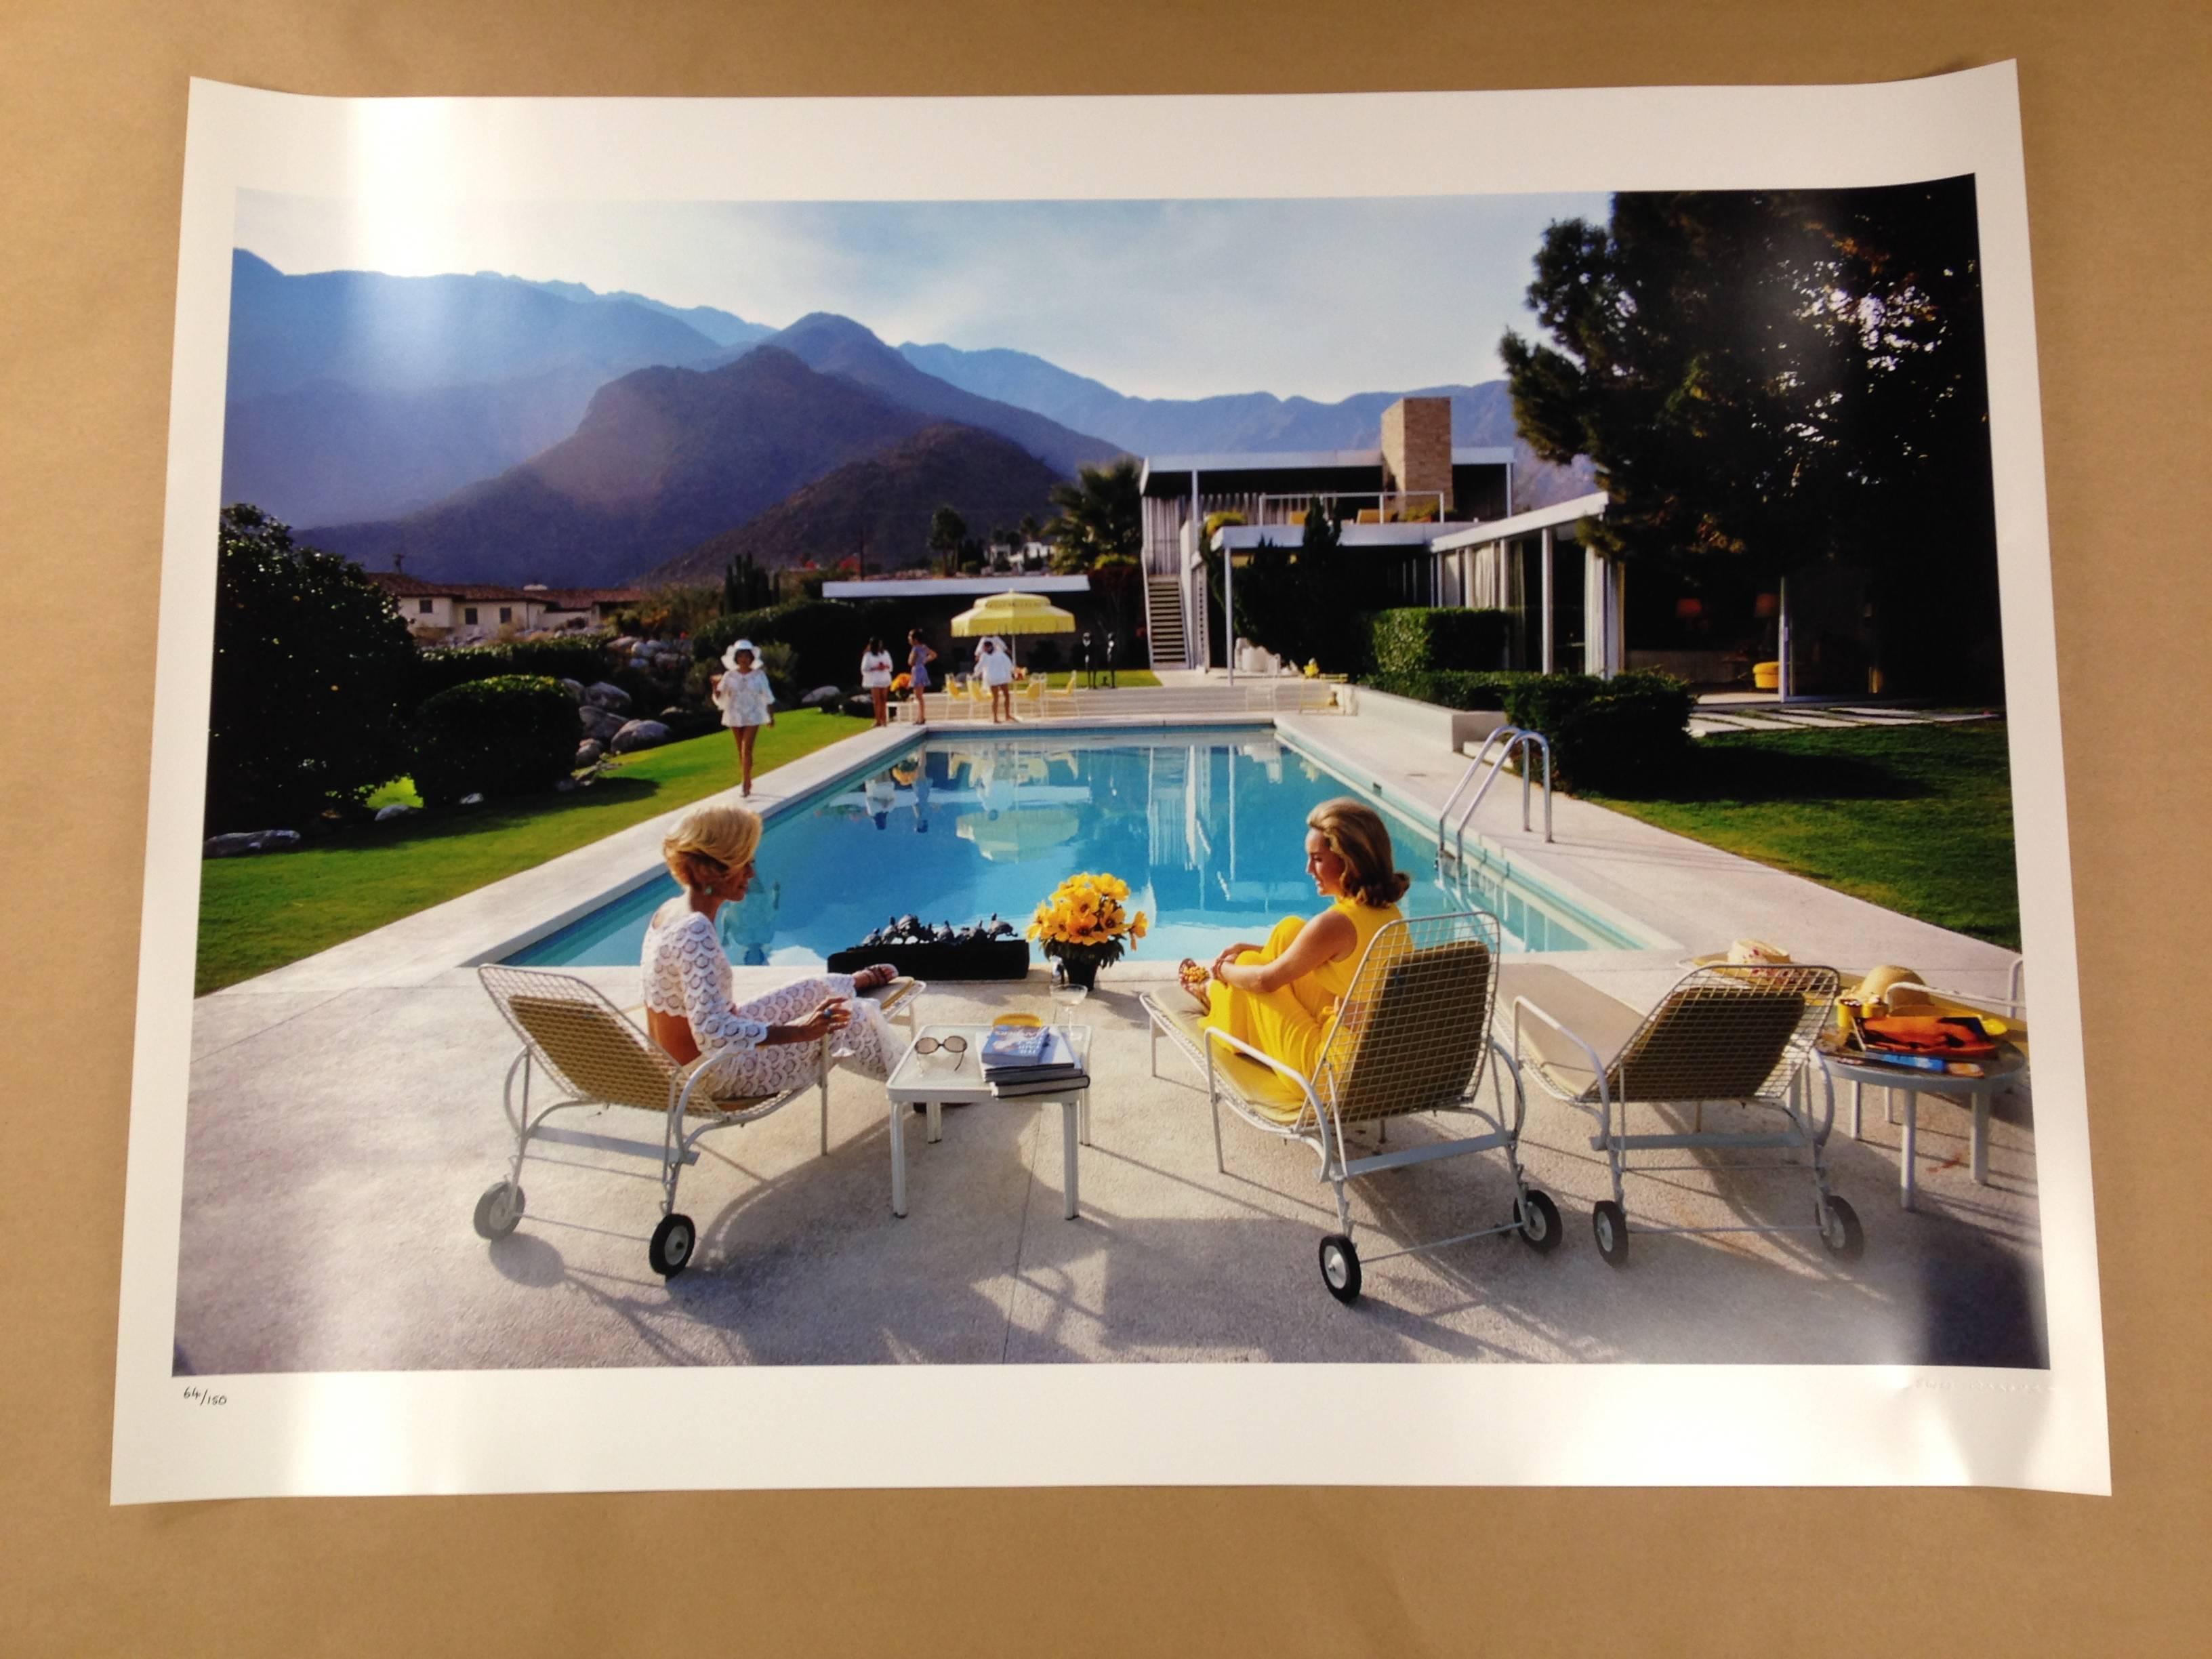 L'hôtel Beverly Hills, photographie d'édition de succession, vert menthe classique sur bleu - Réalisme Photograph par Slim Aarons